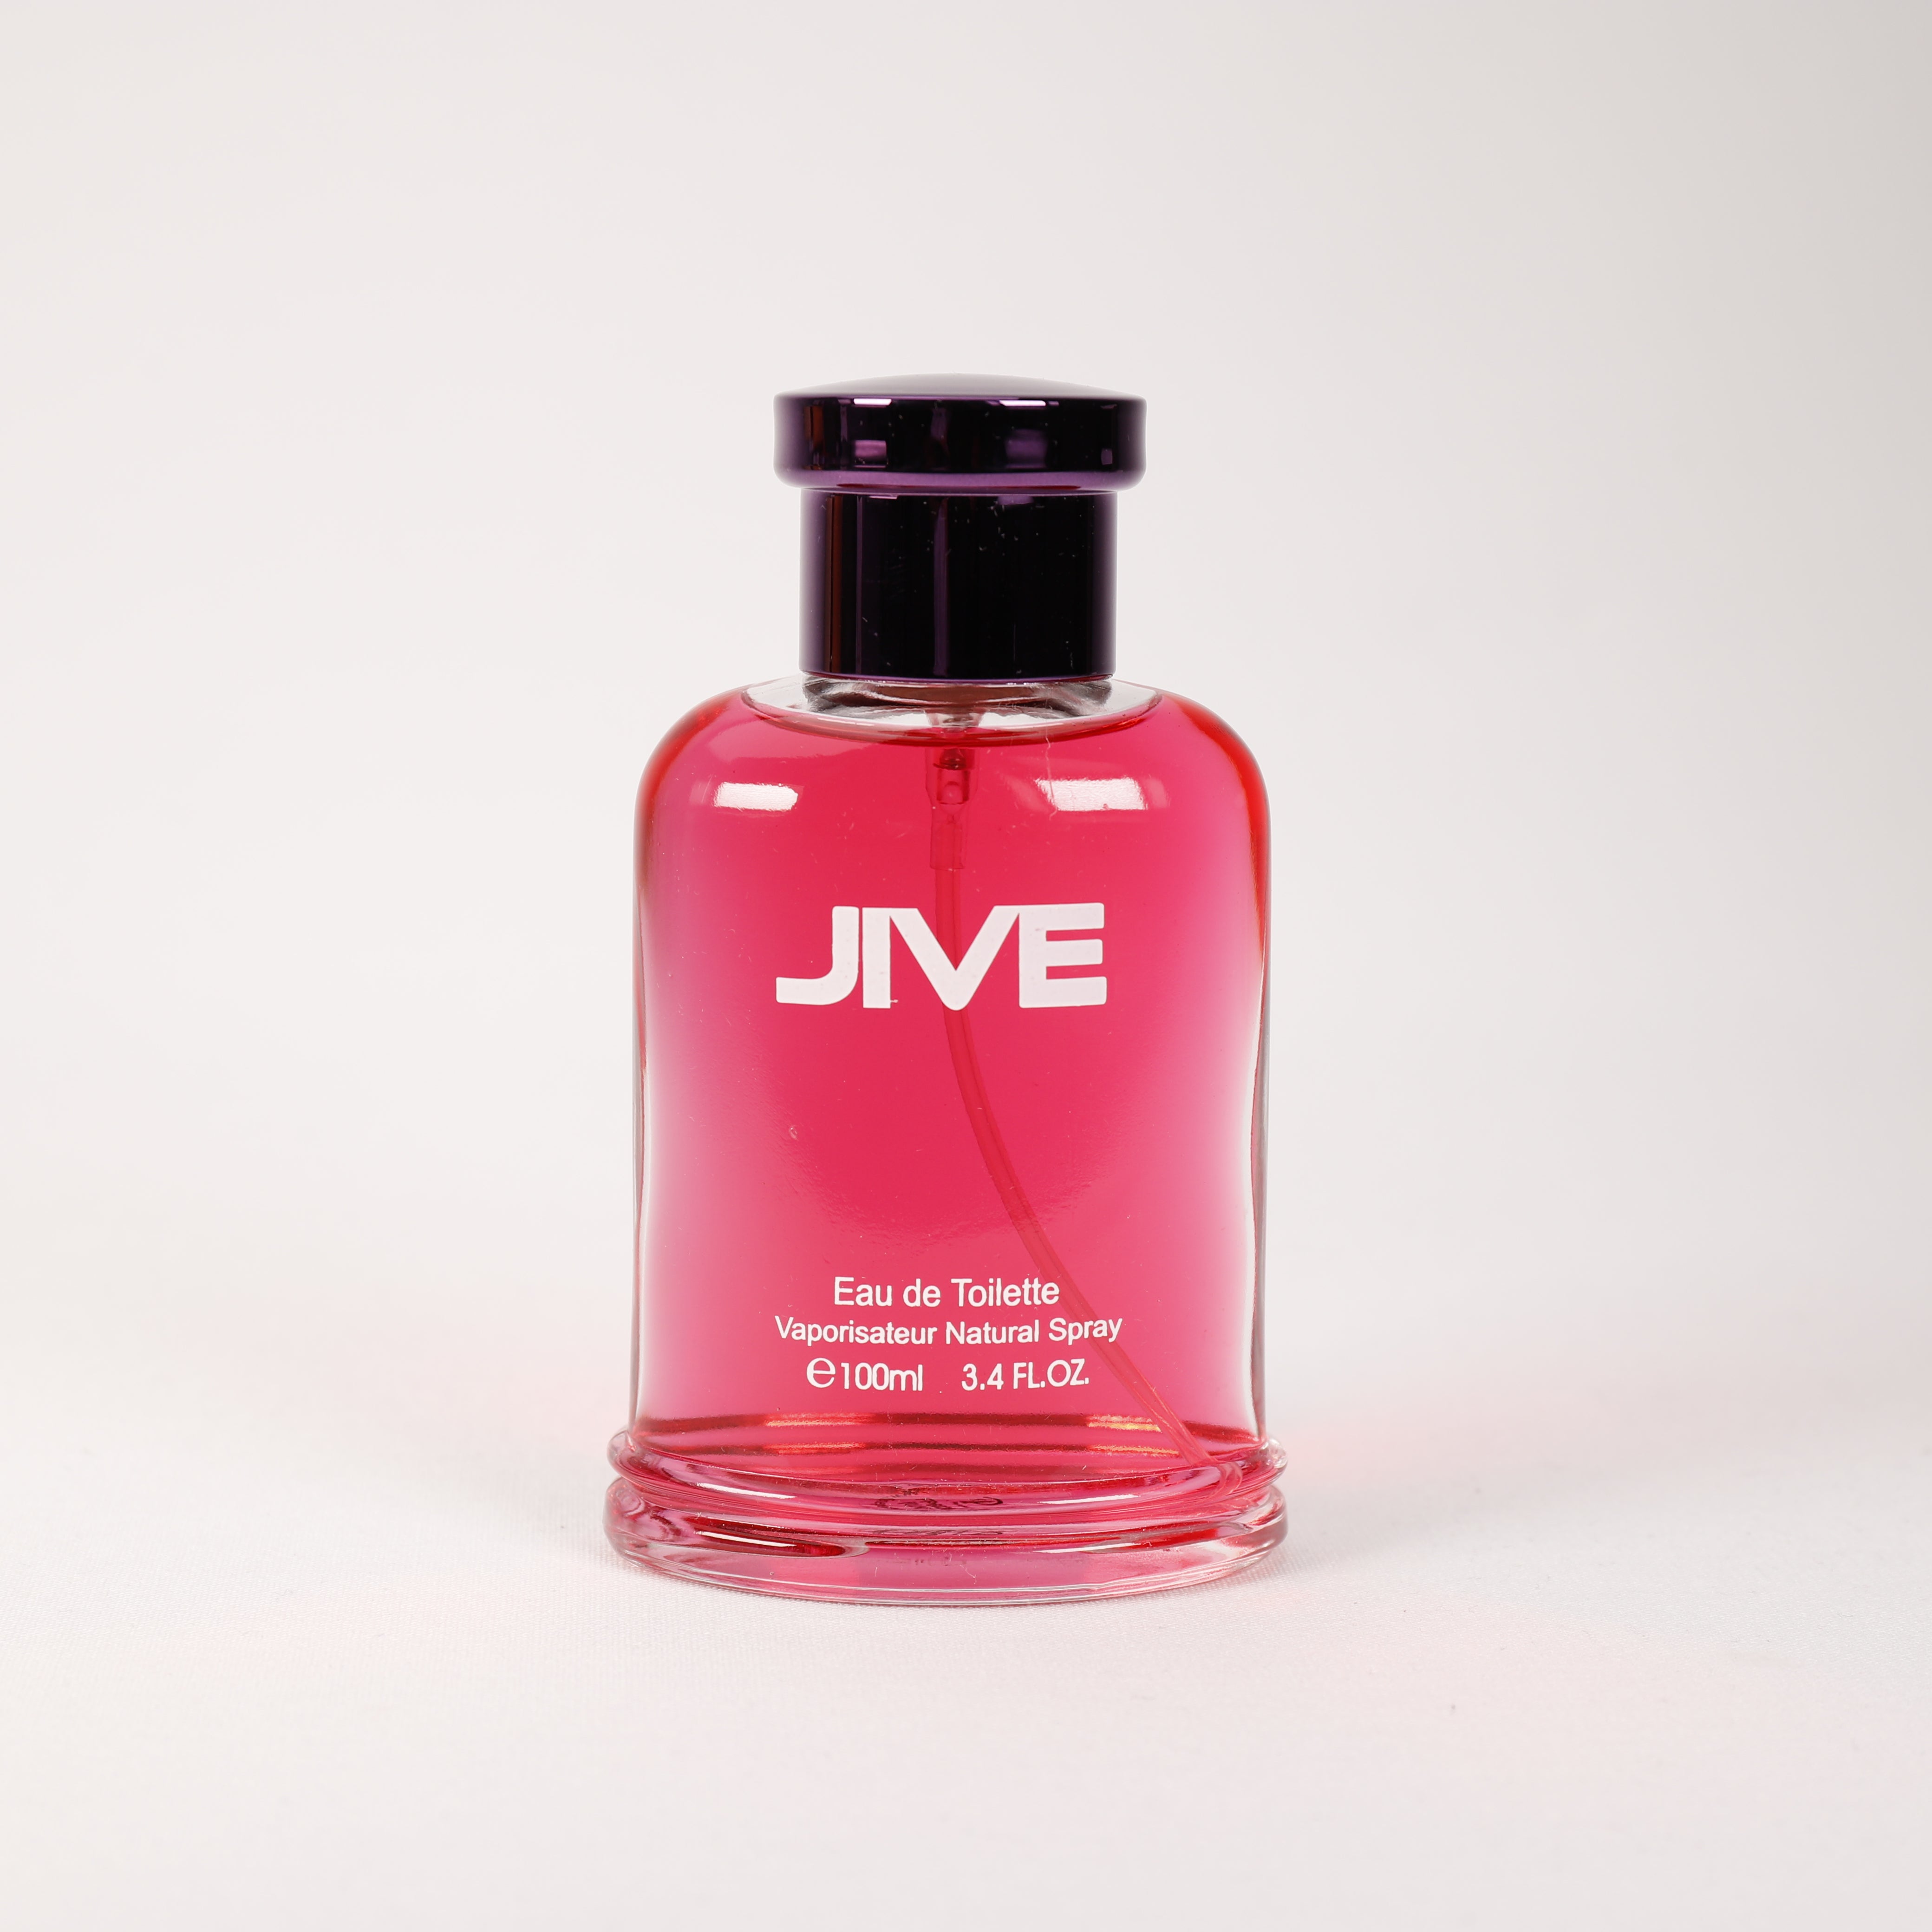 Jive für Herren, Vaporizer mit natürlichem Spray, 100 ml, Duft, Parfum, Parfüm für Männer NEU OVP